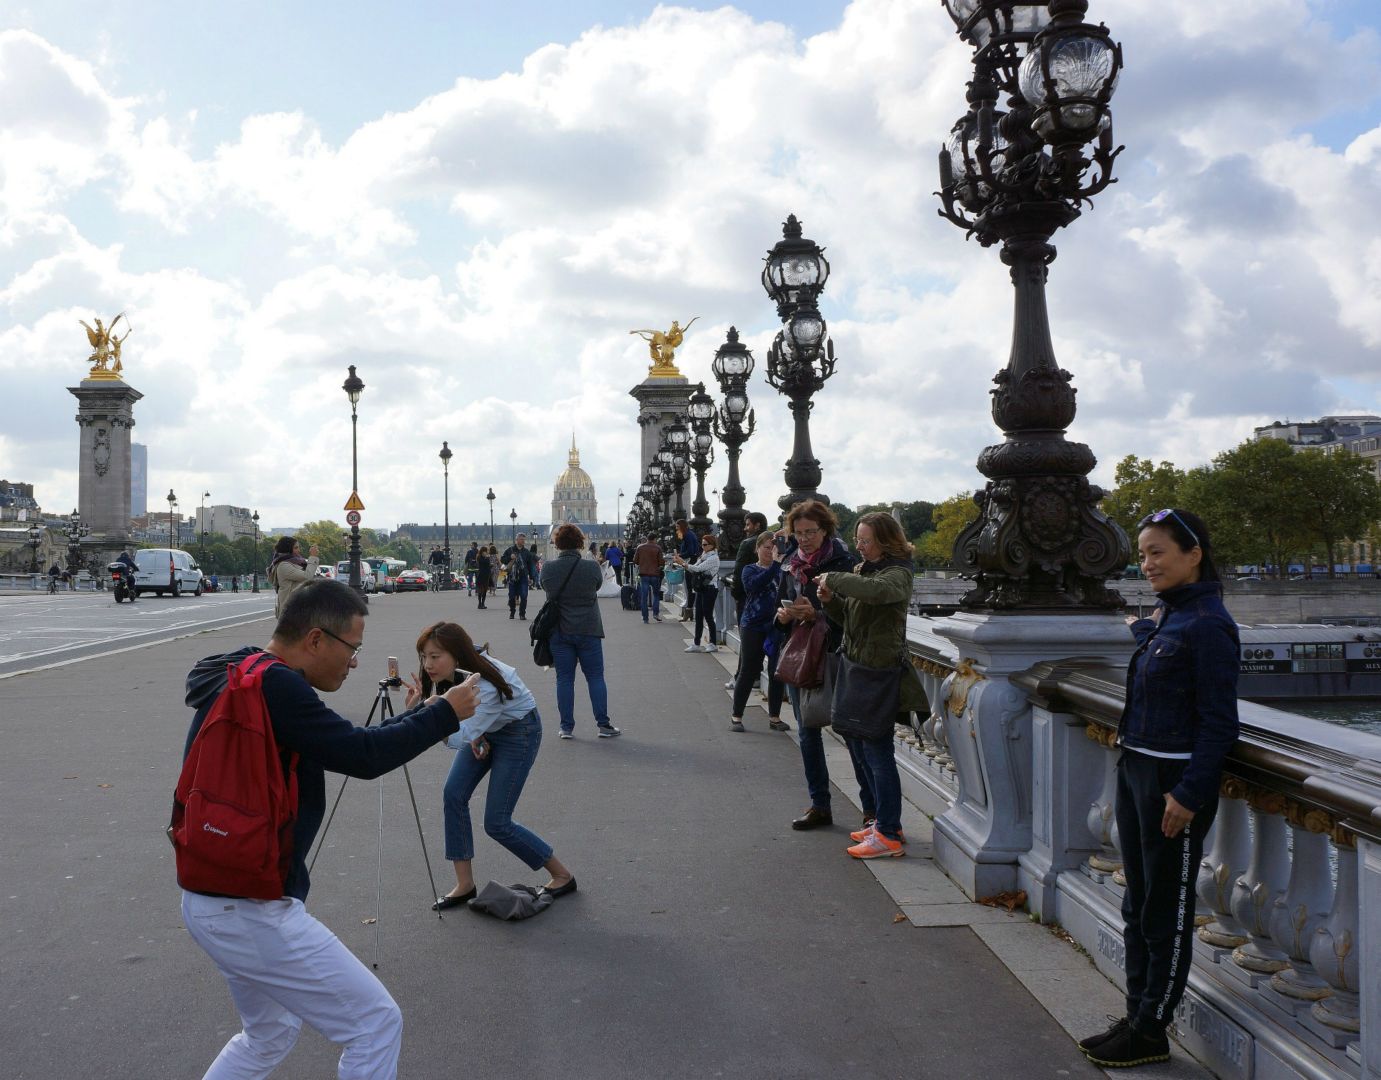 Fotografering pågår, Pont Alexandre III